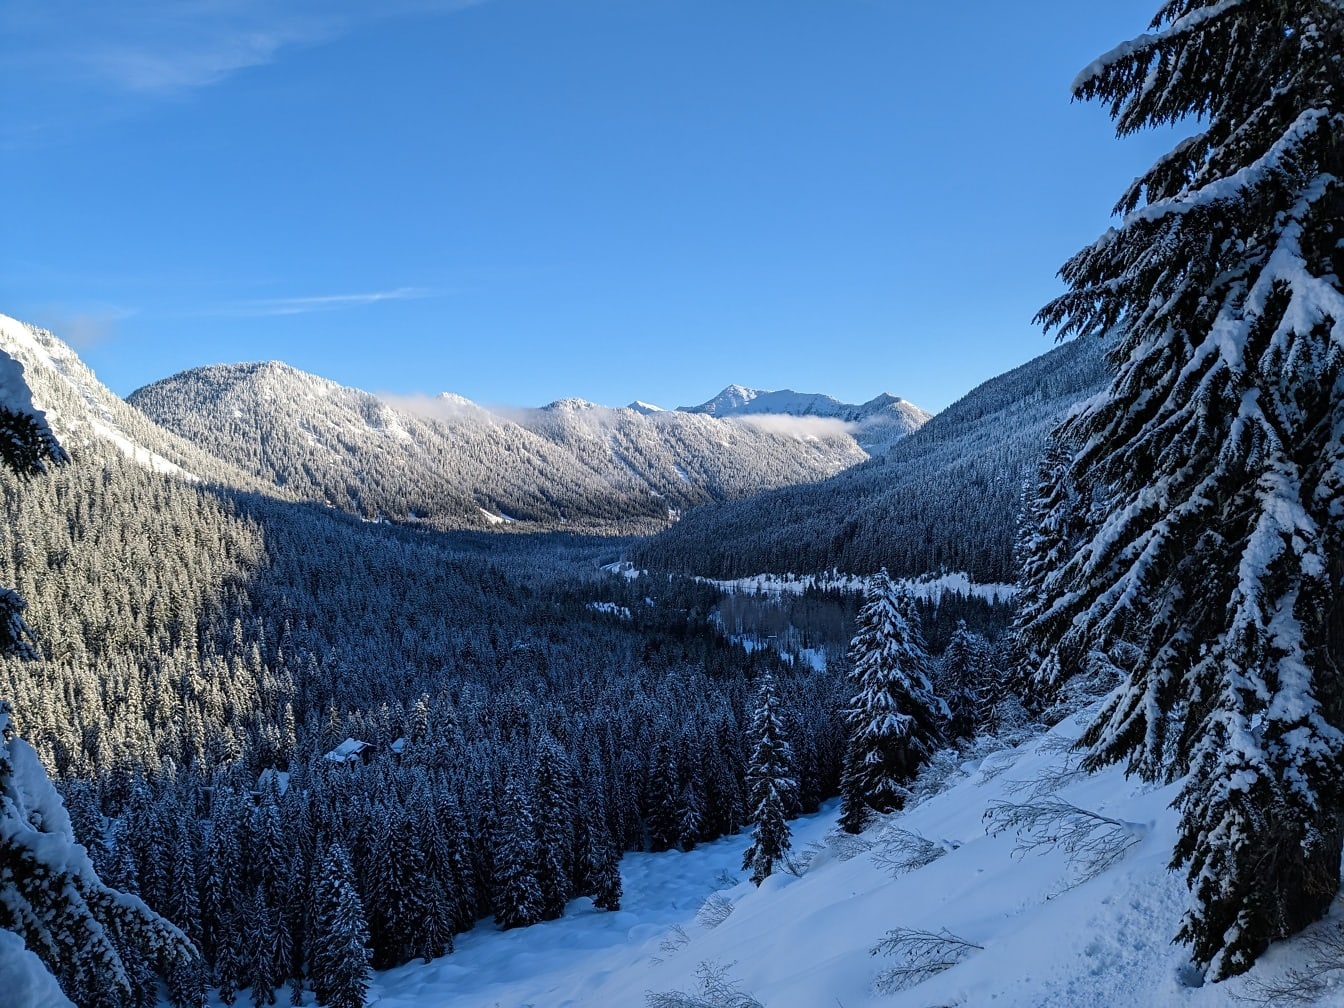 Величествена панорама на замръзнали иглолистни дървета в сянка в долината